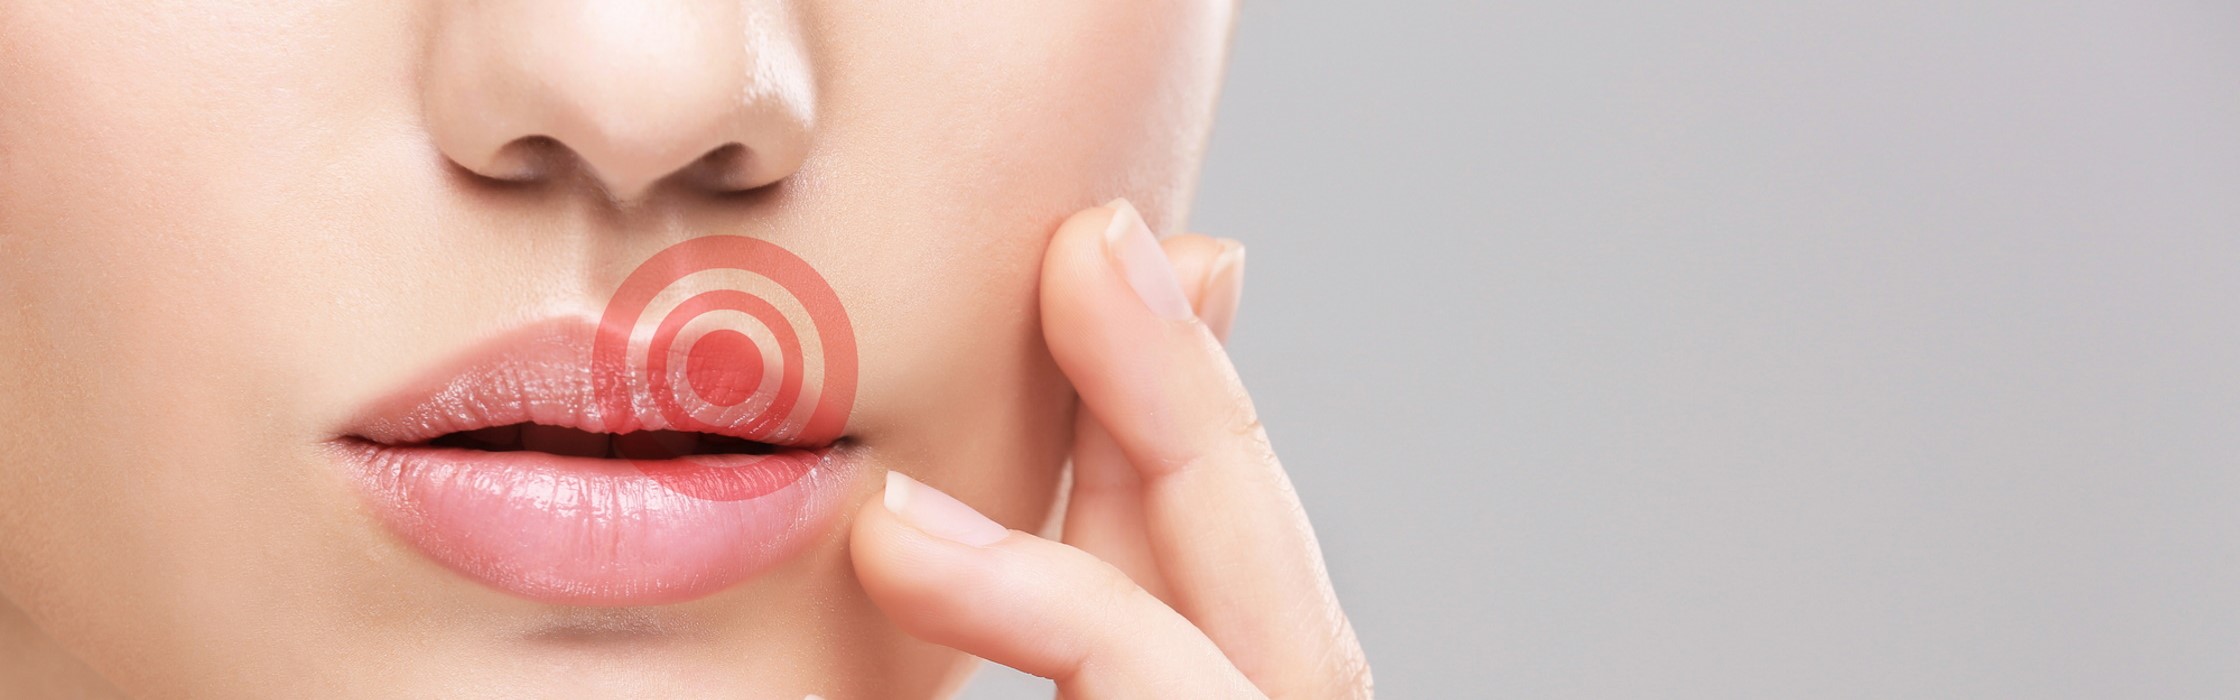 Lippenherpes: Was sind die Symptome und Ursachen?